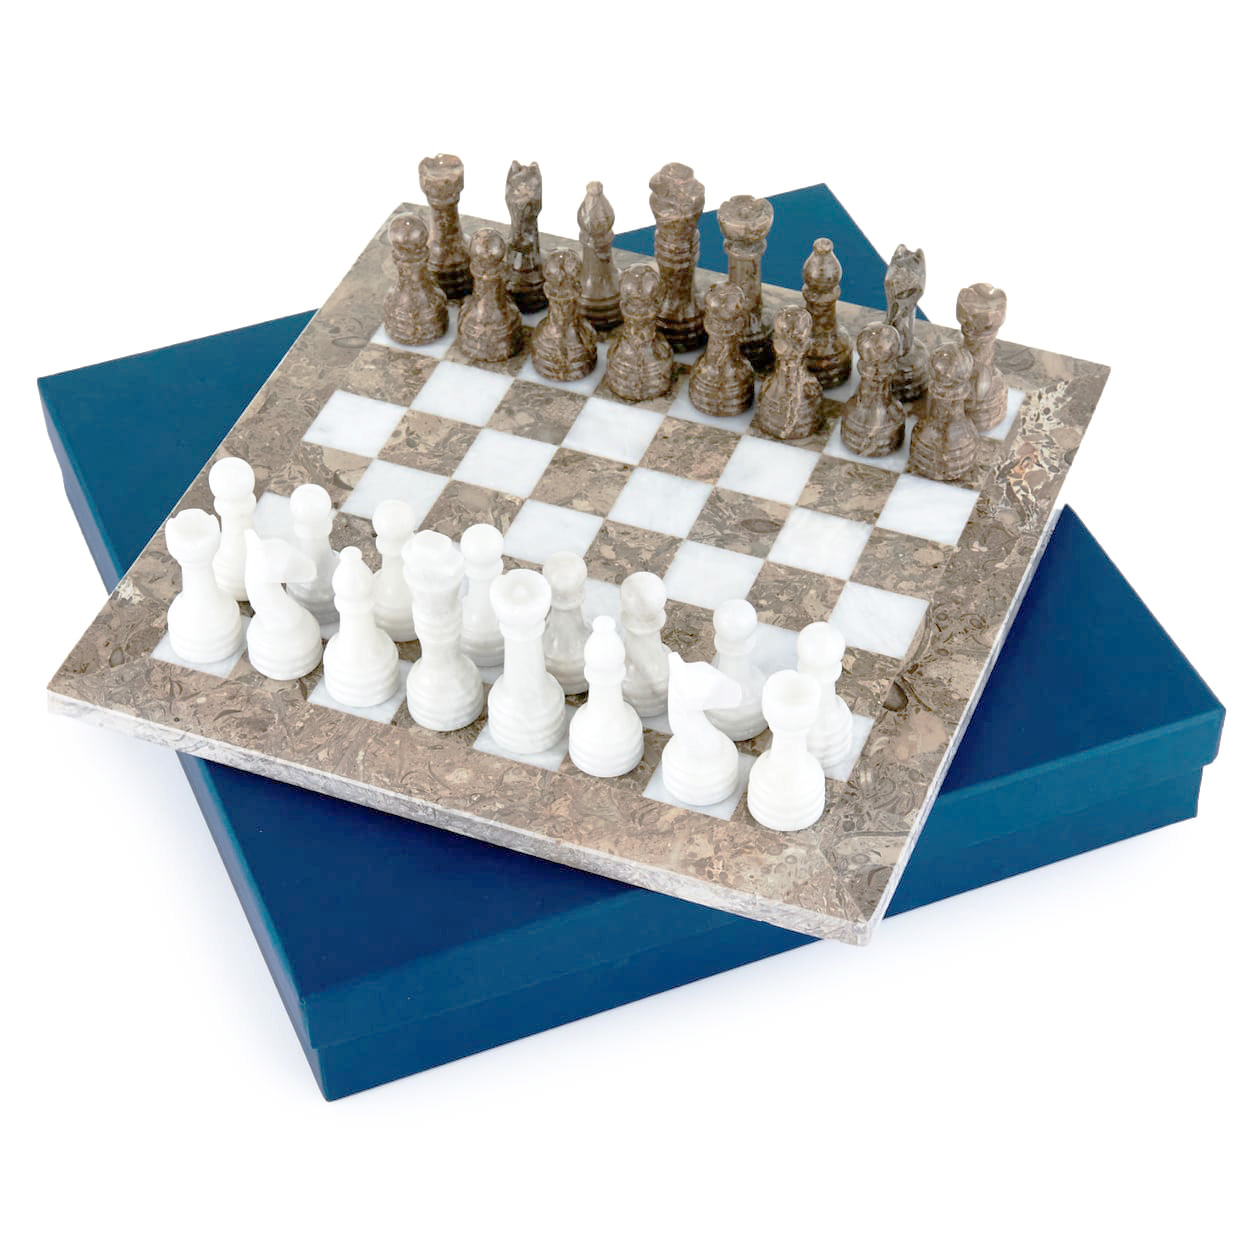 Шахматы PakShah Карфаген серый мрамор ON-W034 пакет а5 23 18 10 серый мрамор нейтр бум мат ламинат